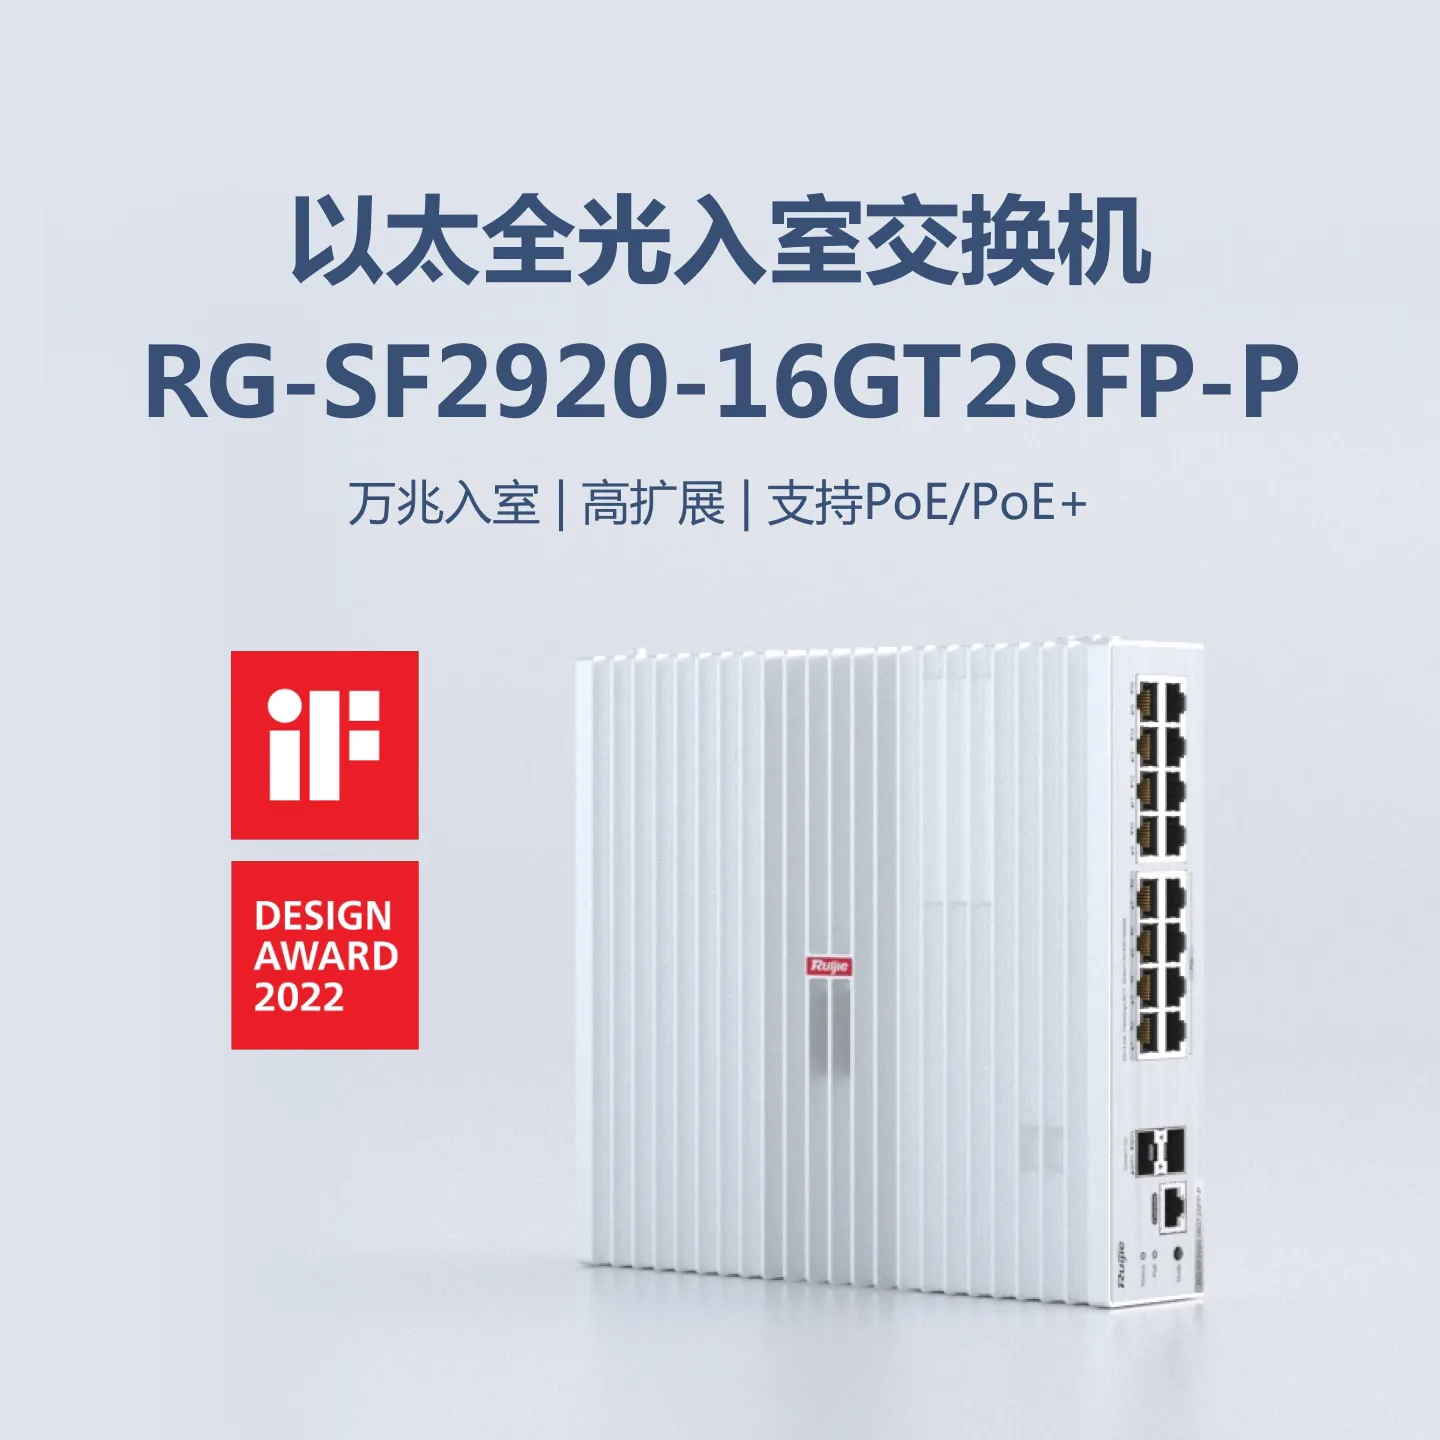 RG-SF2920-16GT2SFP-P